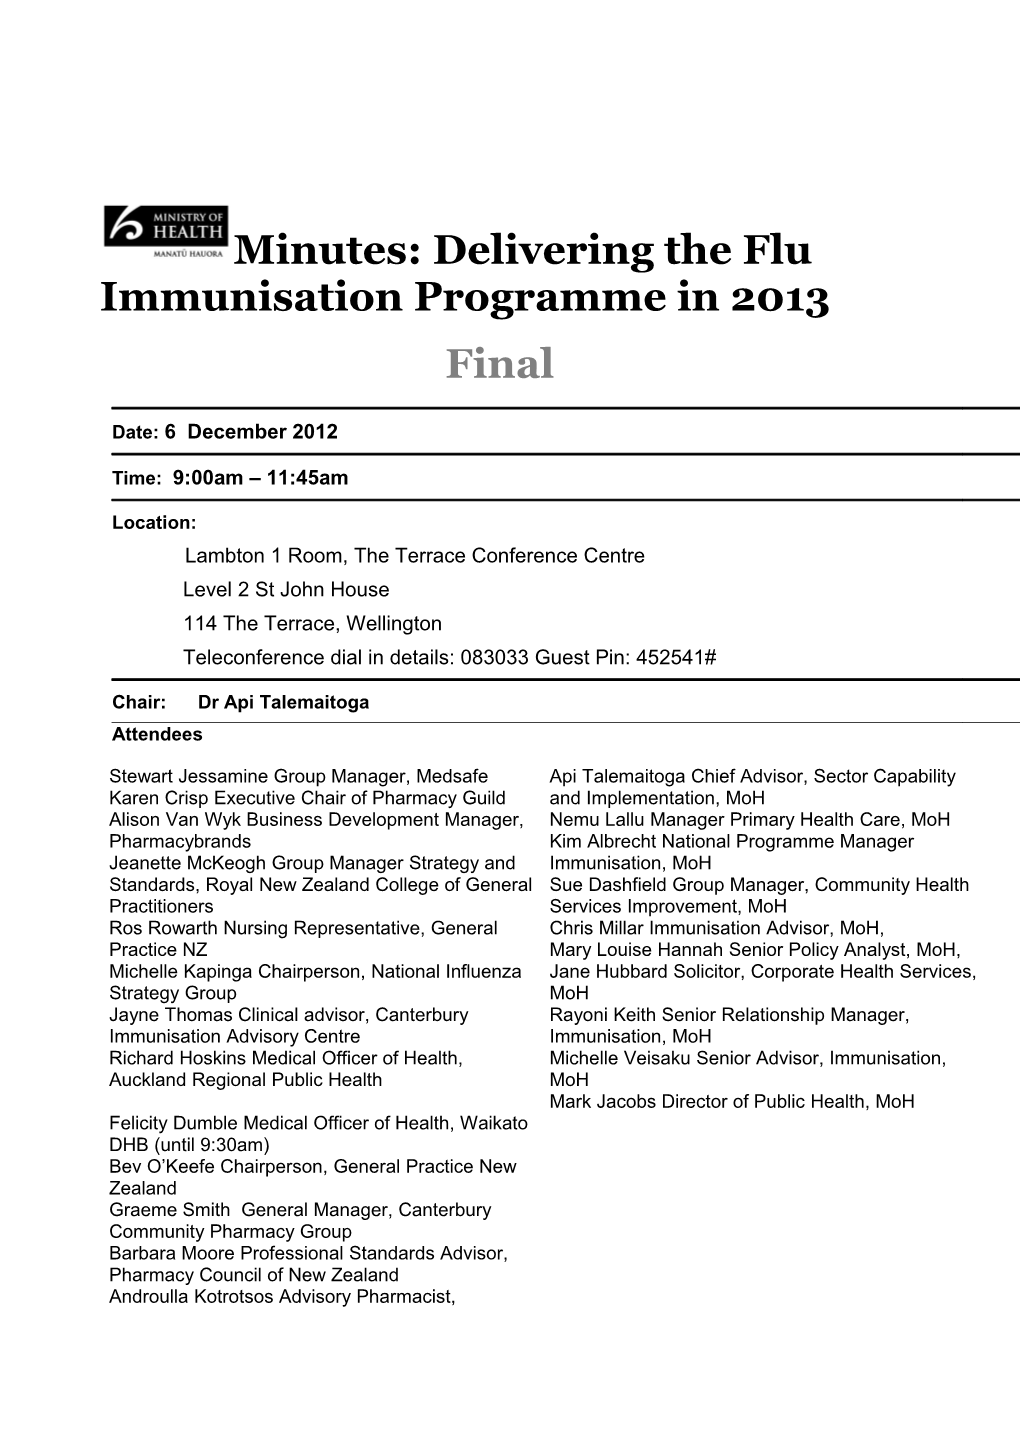 Minutes: Delivering the Flu Immunisation Programme in 2013